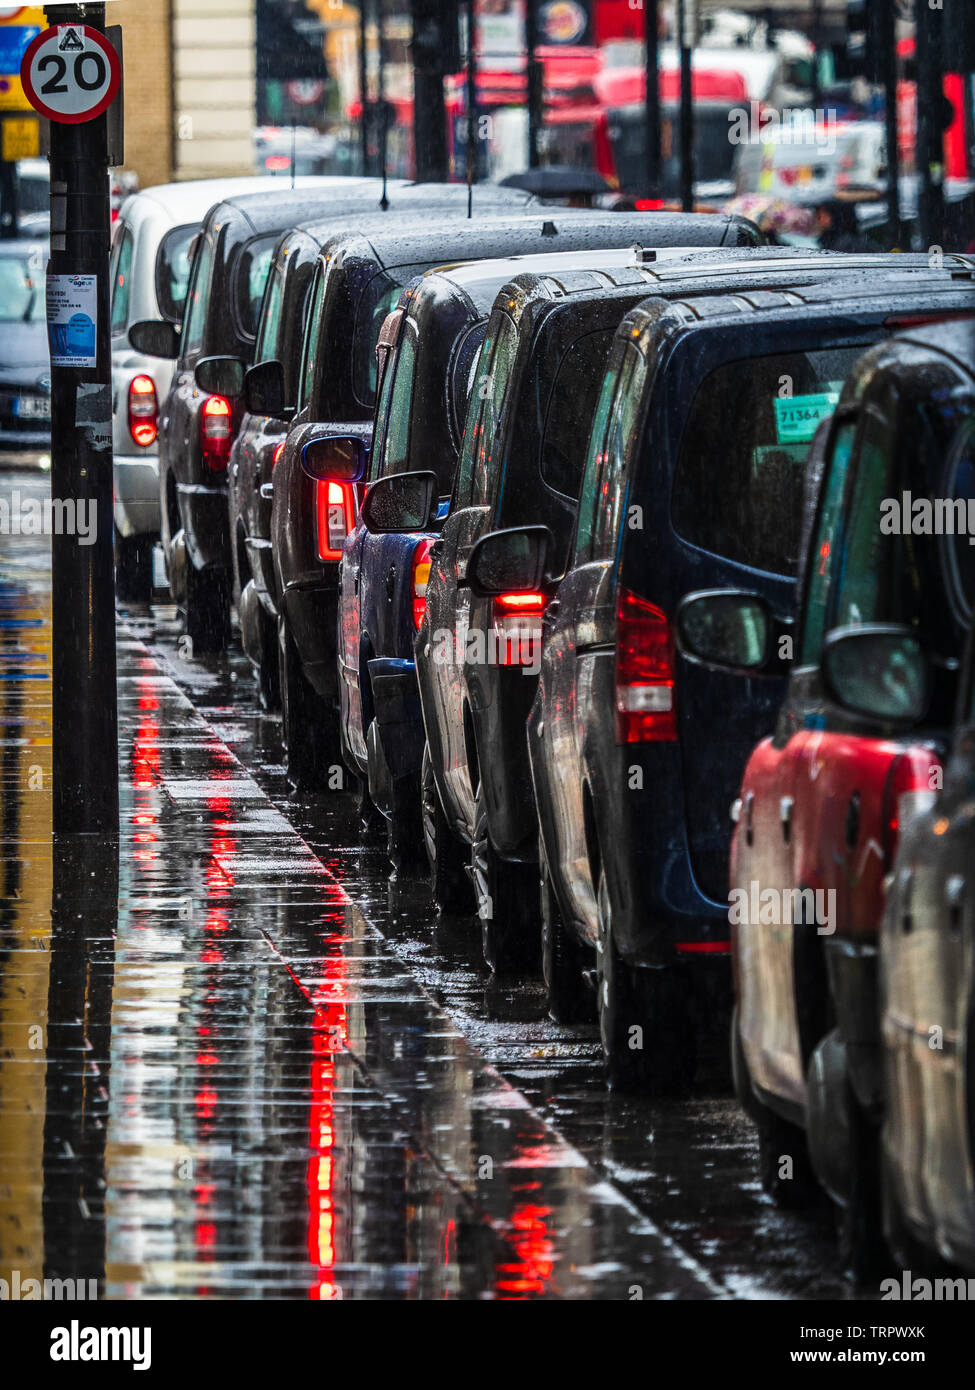 Les taxis de Londres sous la pluie - une file d'attente de taxis noirs de Londres attendent des passagers dans la pluie battante Banque D'Images